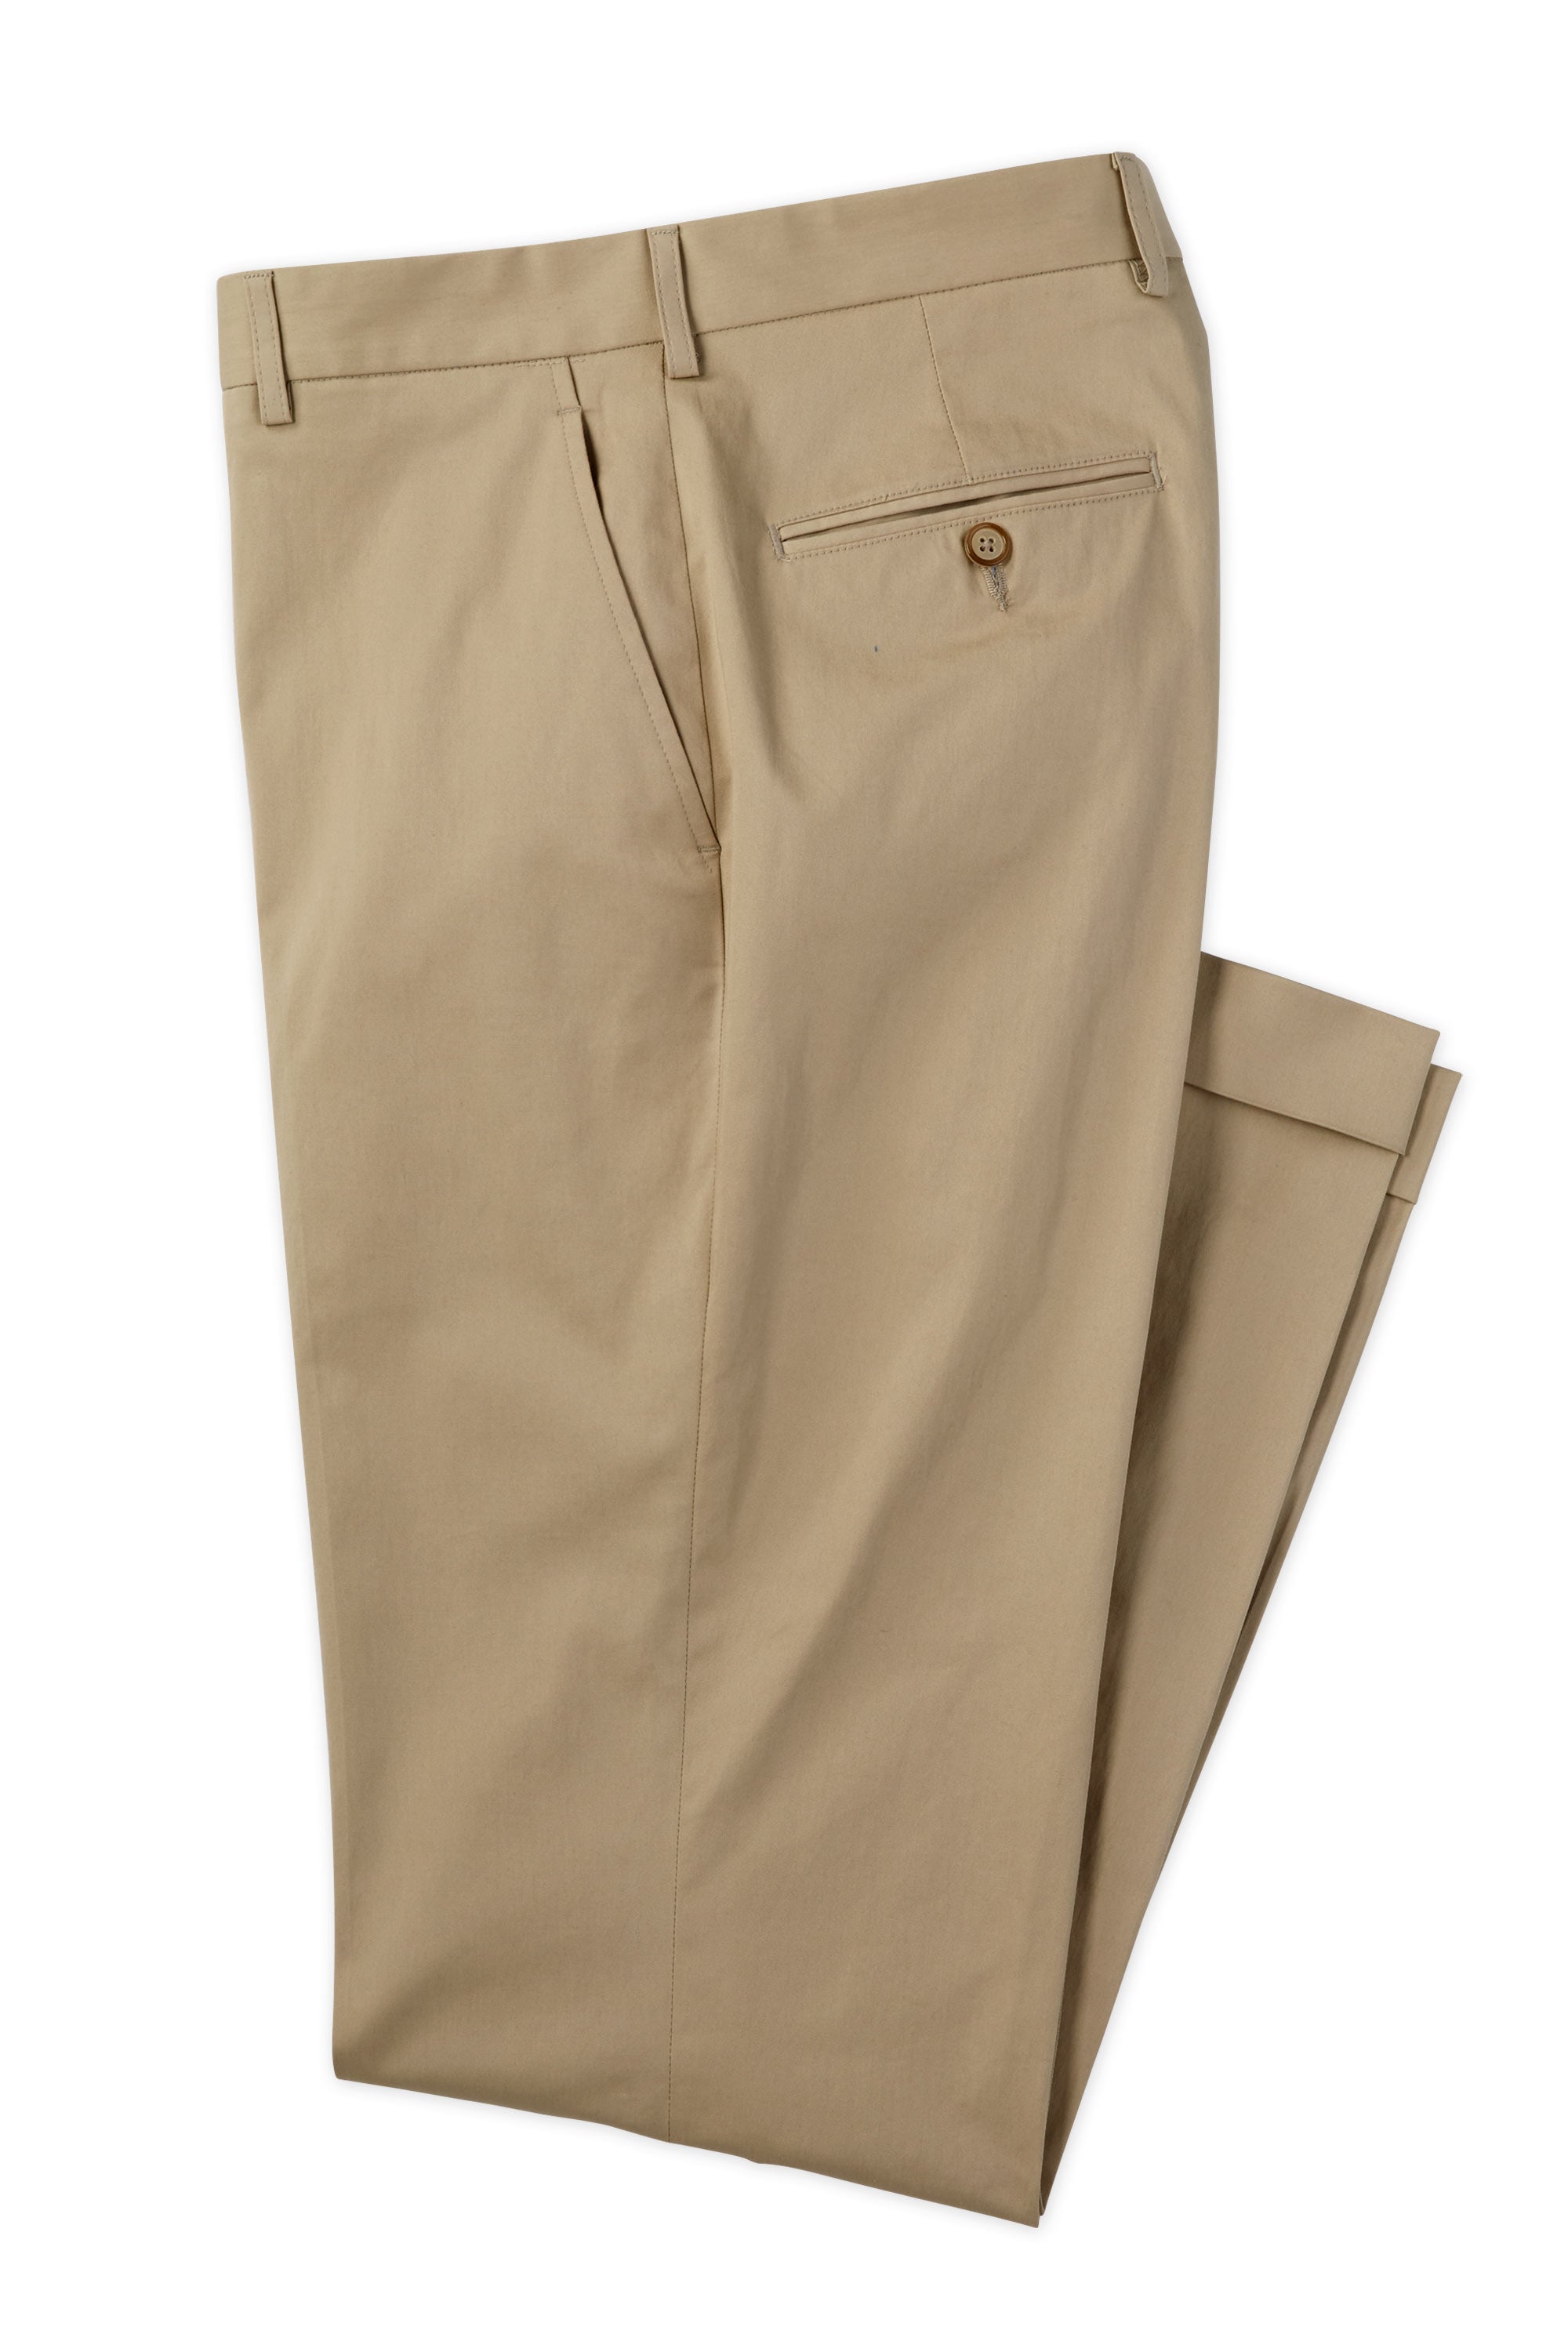 Men's Flat Front Pant Chairman’s Collection - KHAKI 97/3 CO/EA